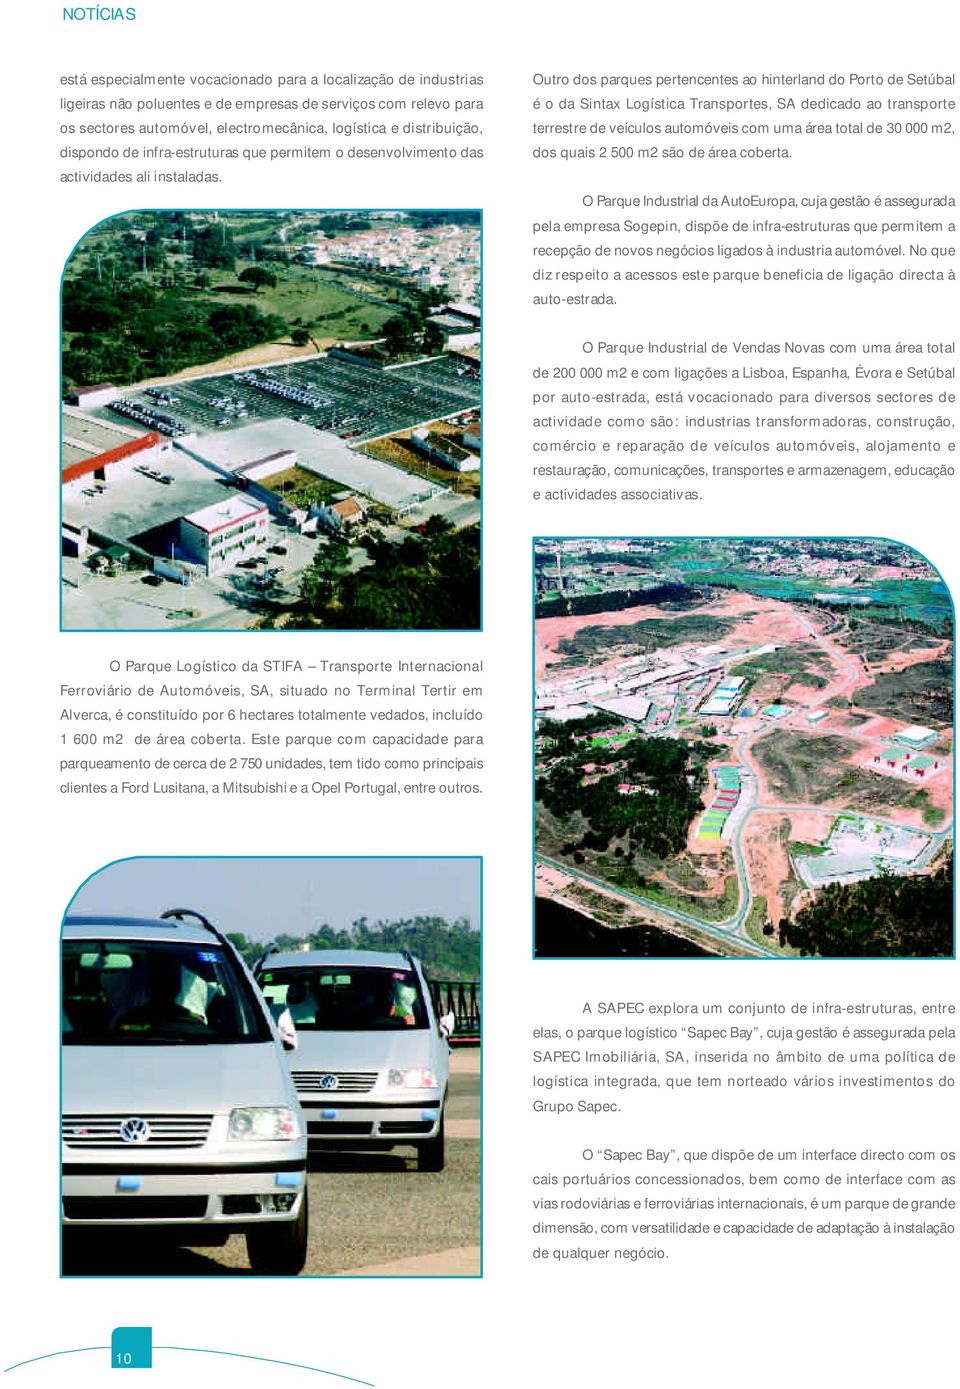 Outro dos parques pertencentes ao hinterland do Porto de Setúbal é o da Sintax Logística Transportes, SA dedicado ao transporte terrestre de veículos automóveis com uma área total de 30 000 m2, dos